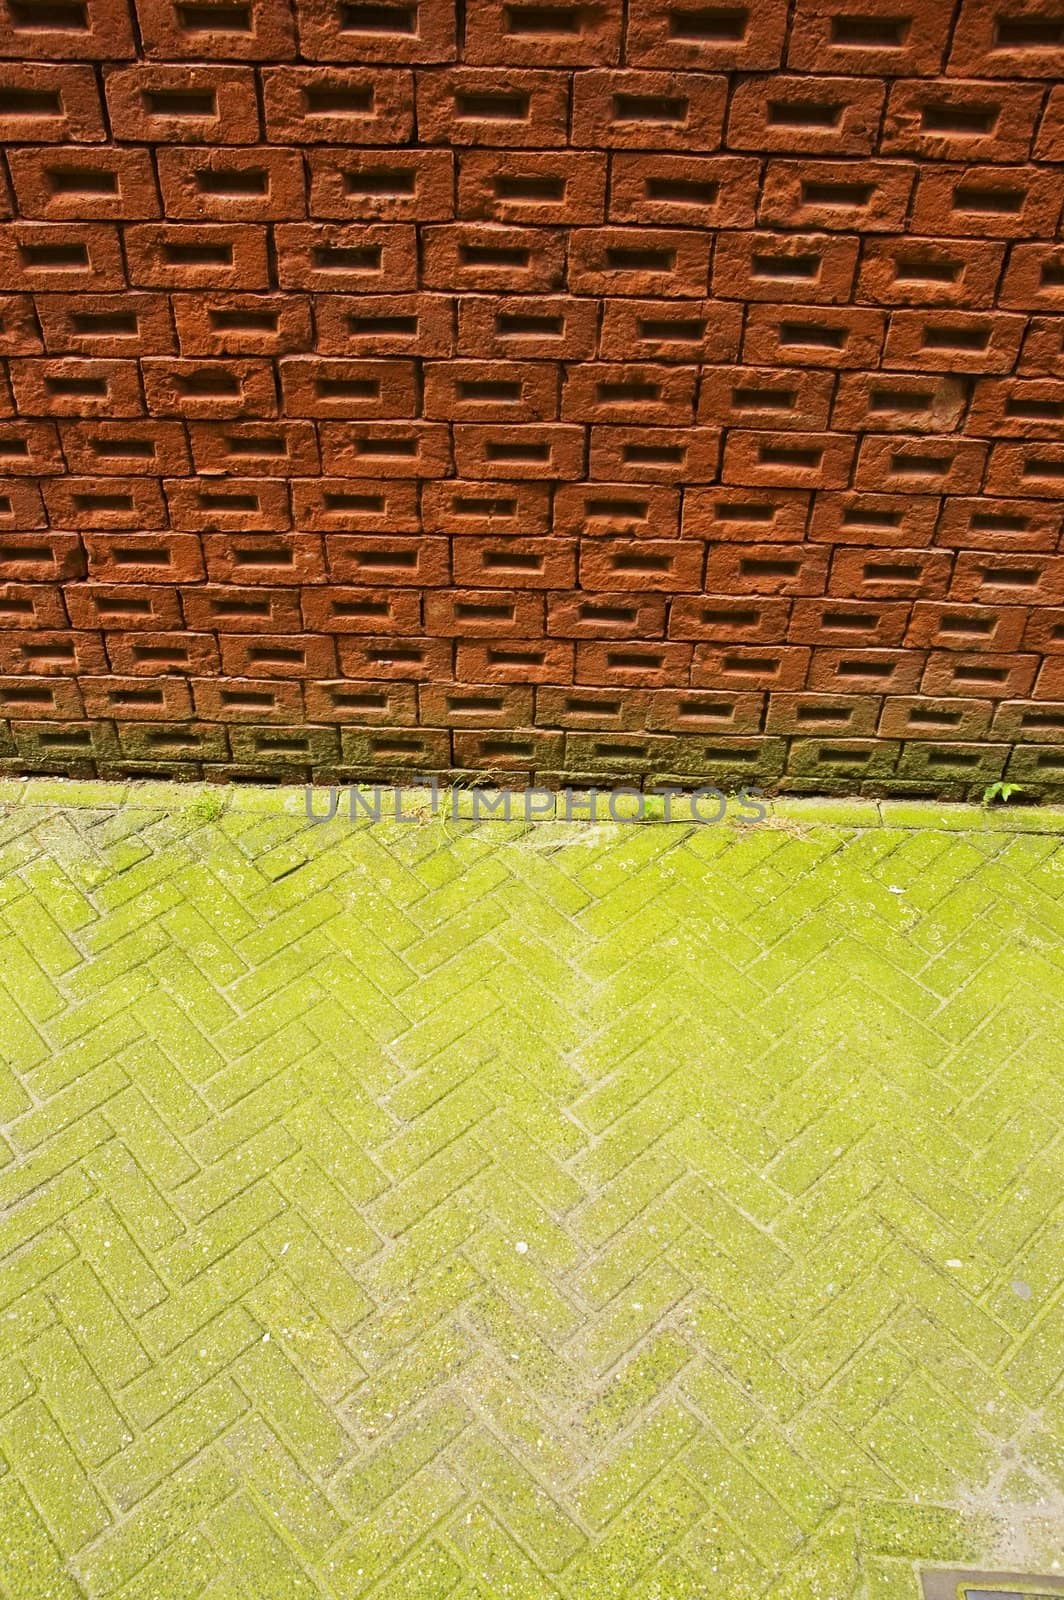 Brick wall and green pavement. Amsterdam.